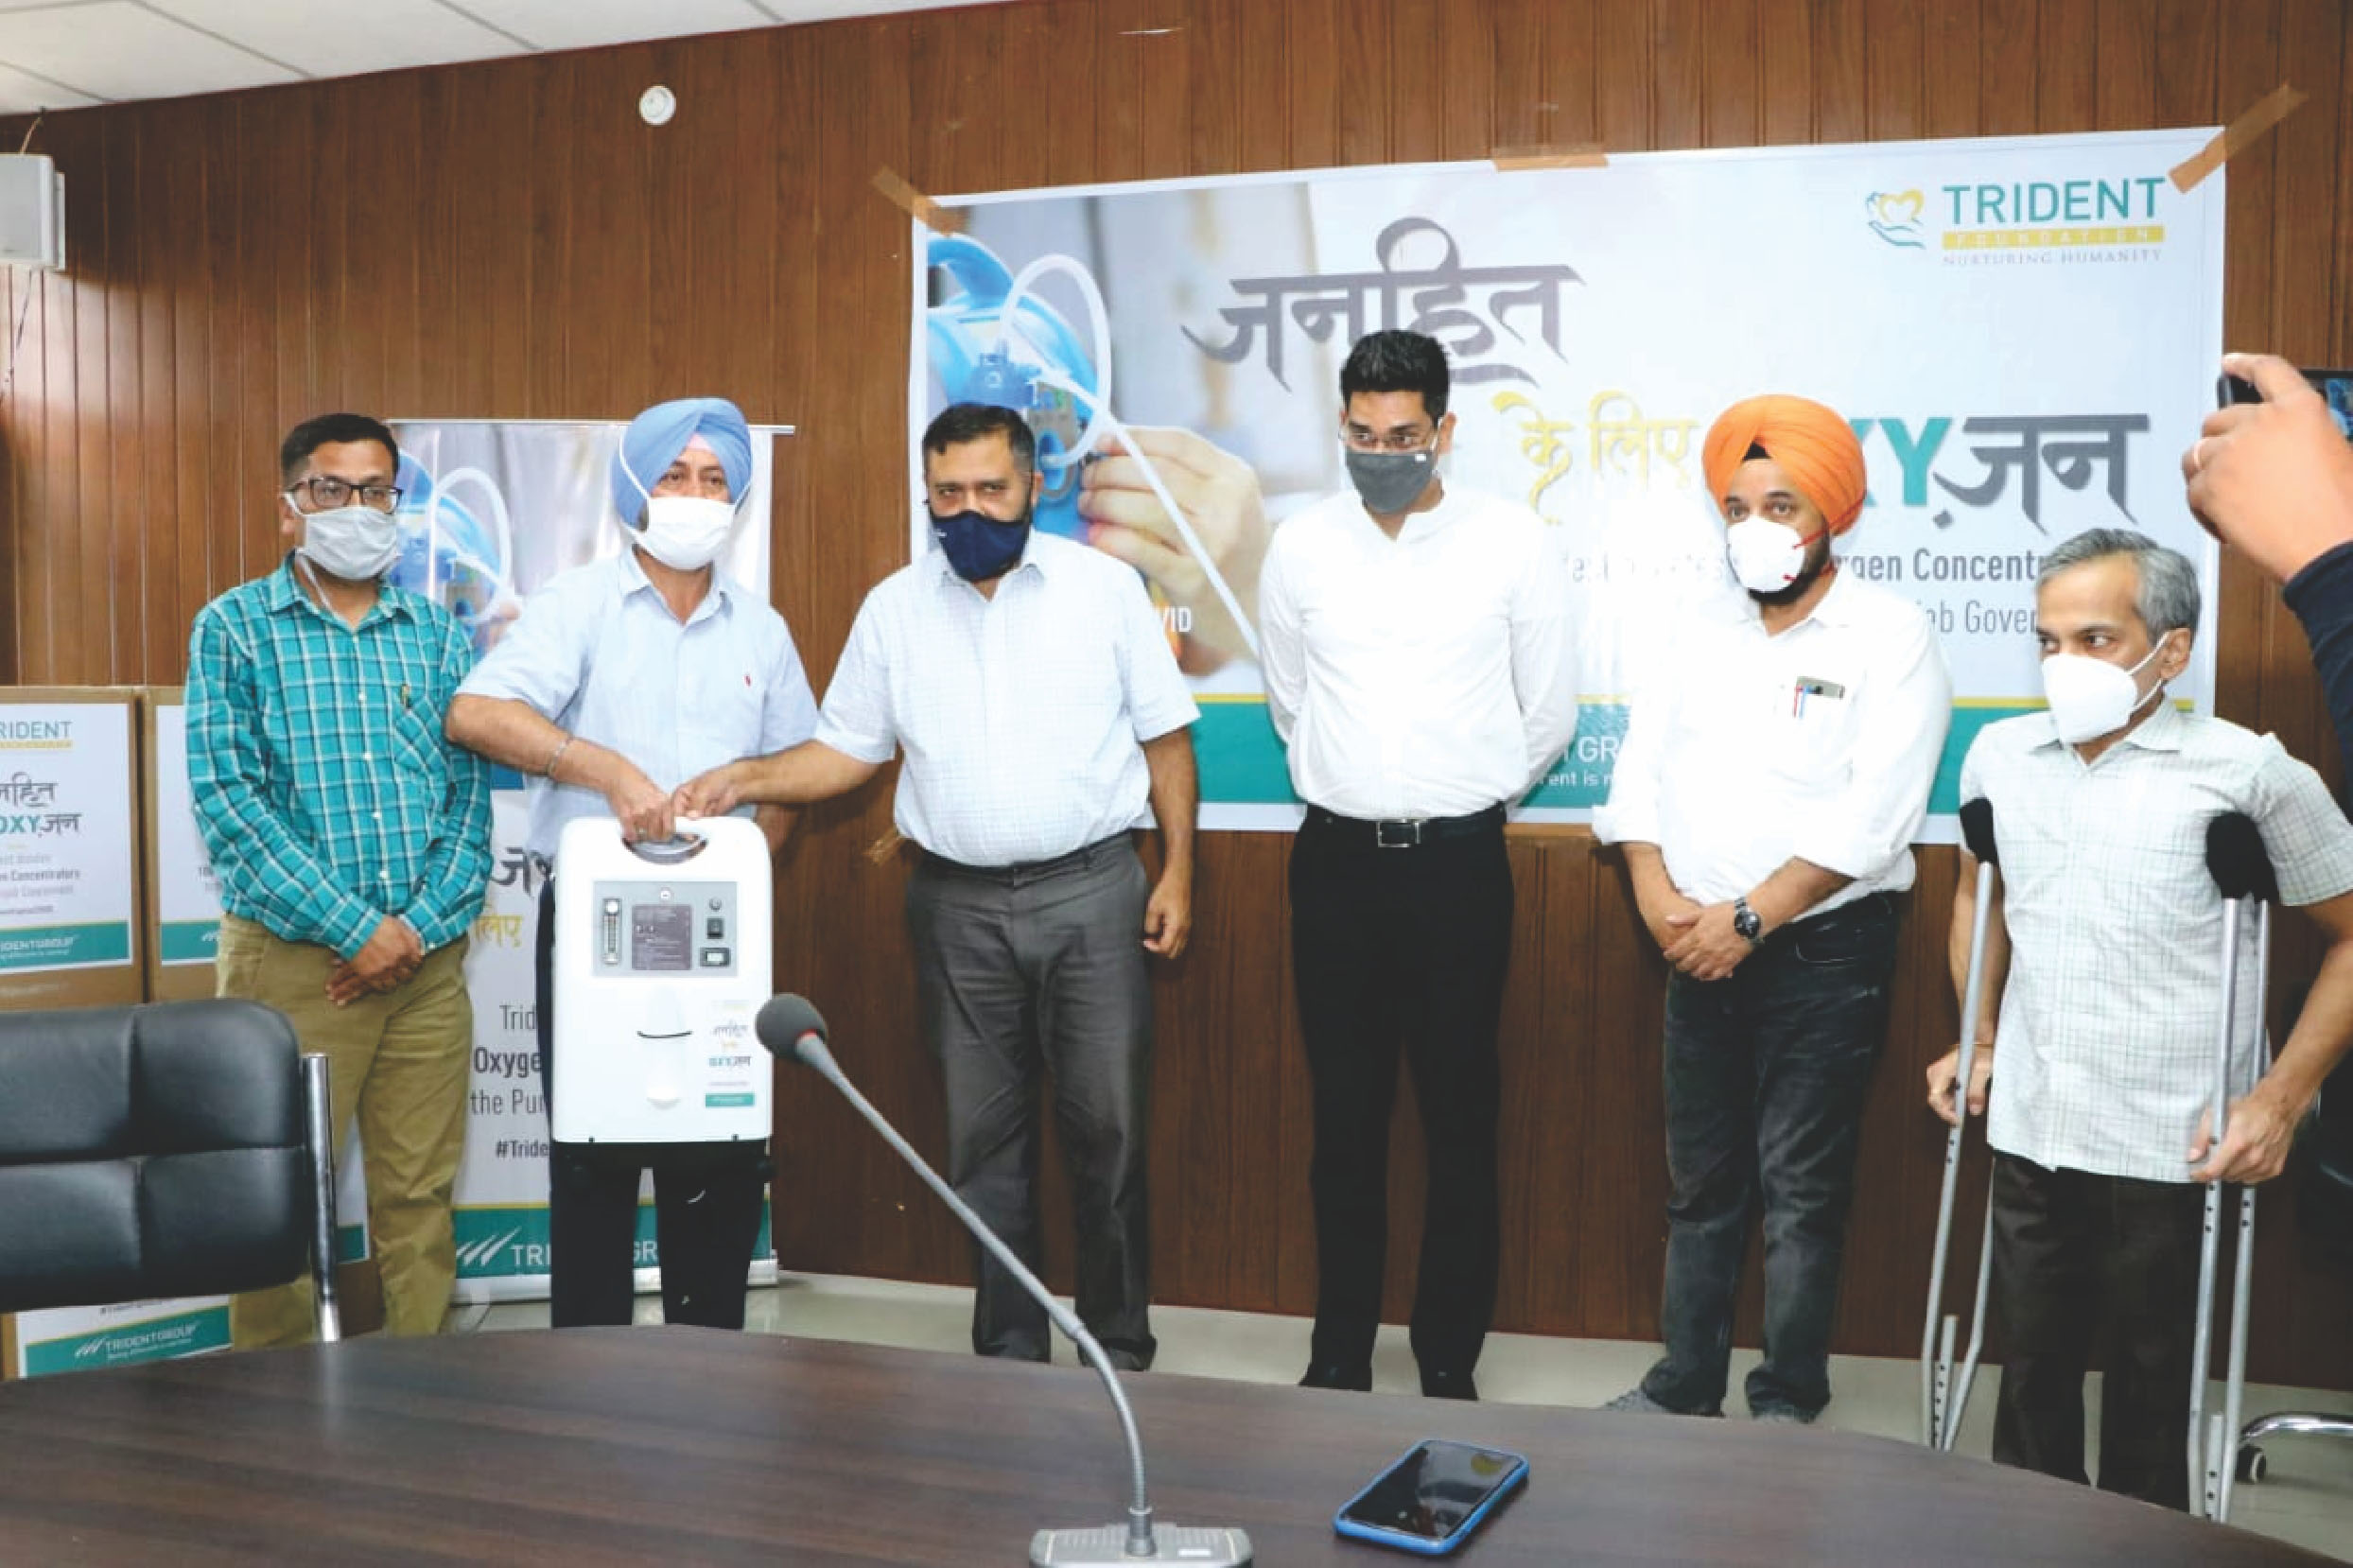 Trident Ltd donates 100 oxygen concentrators to Punjab Govt